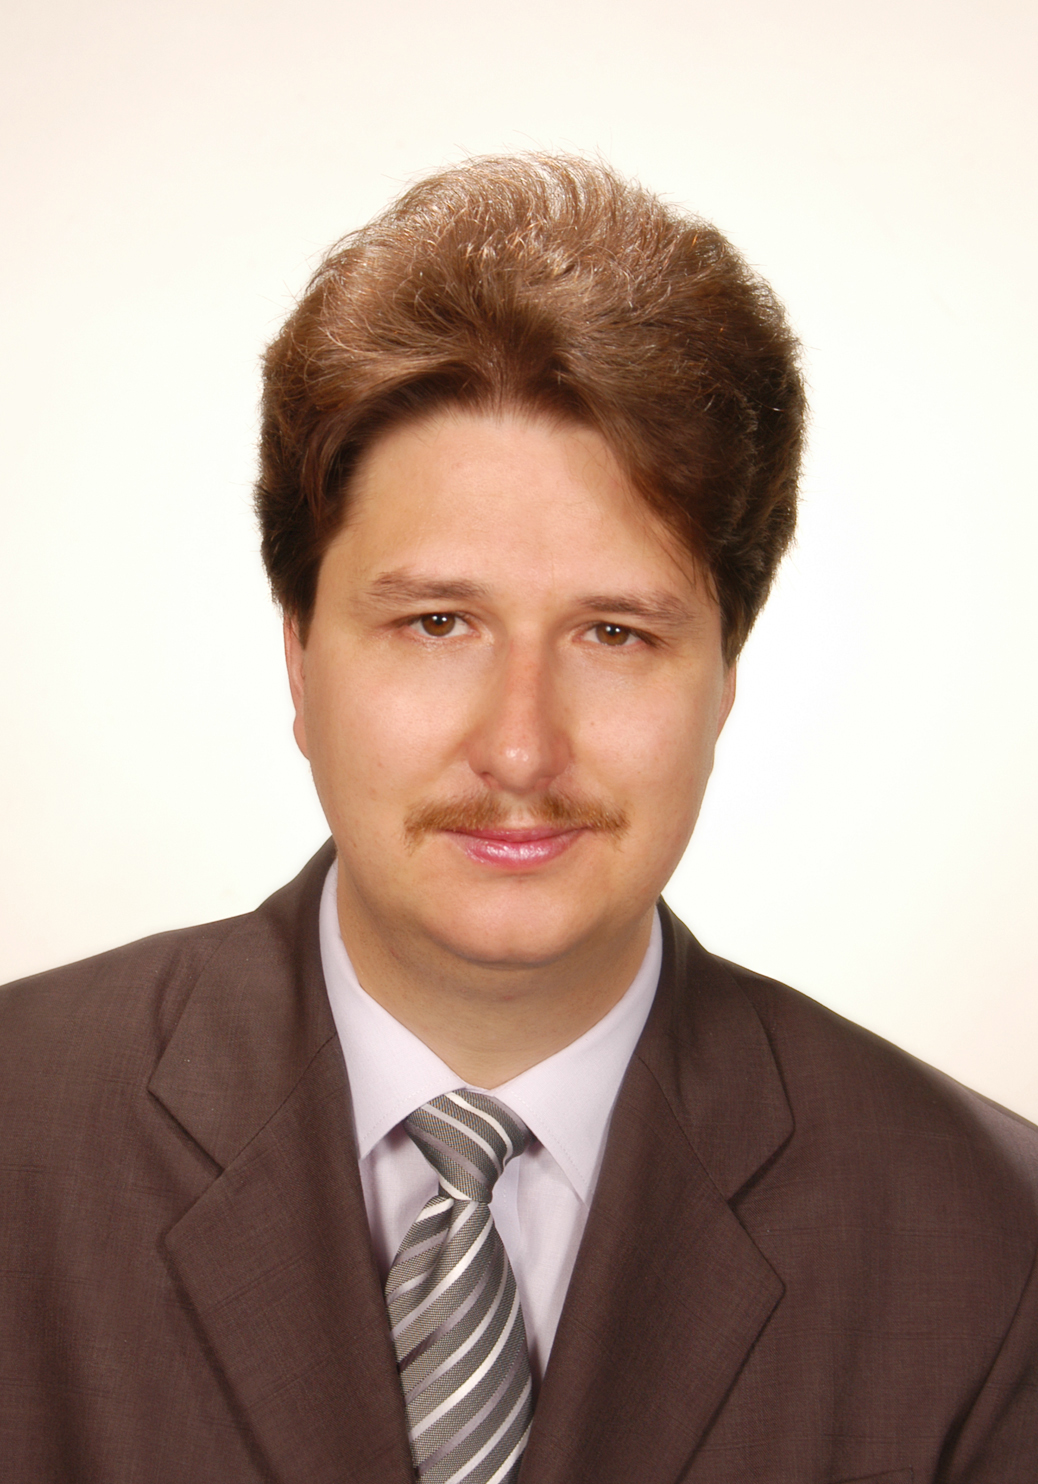 Dr. Laszlo Barna Iantovics